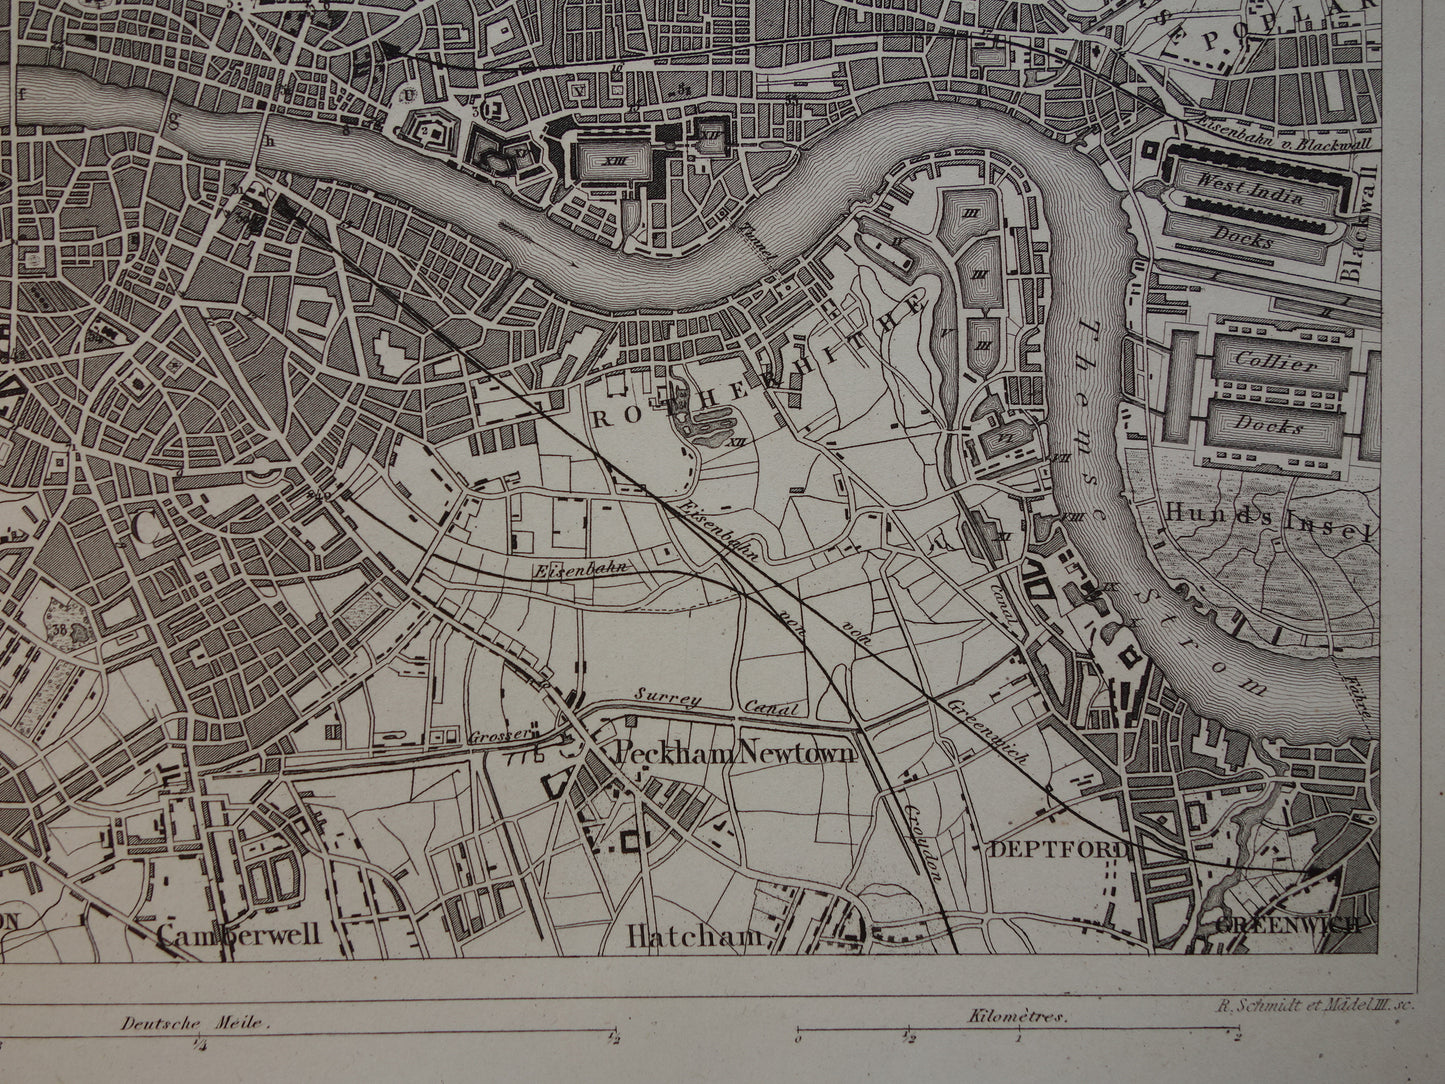 LONDEN antieke plattegrond 170+ jaar oude kaart van Londen Engeland uit 1849 Originele vintage historische kaarten